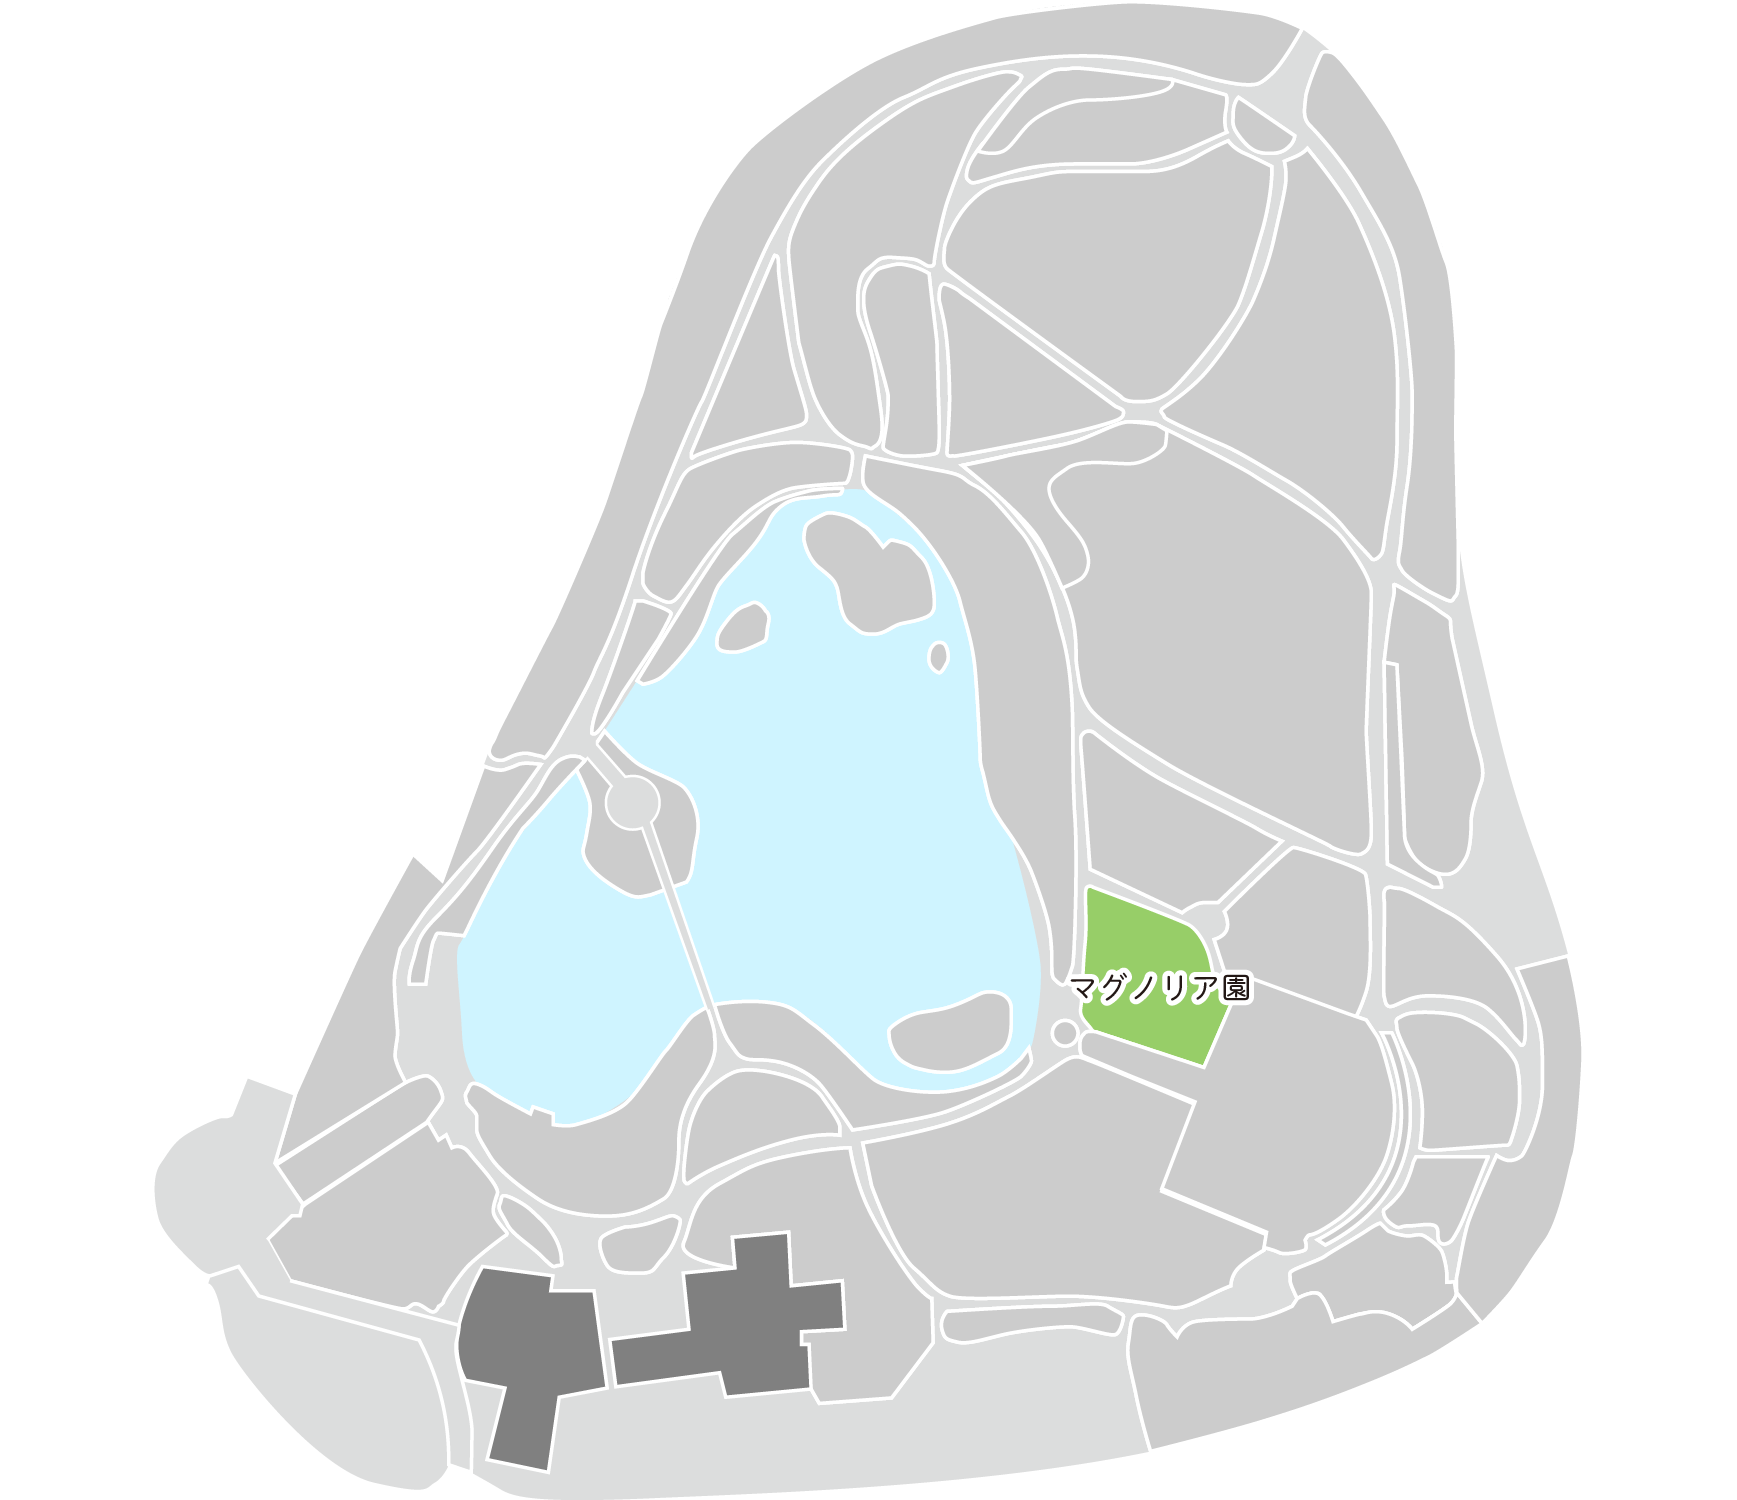 マグノリア園マップ